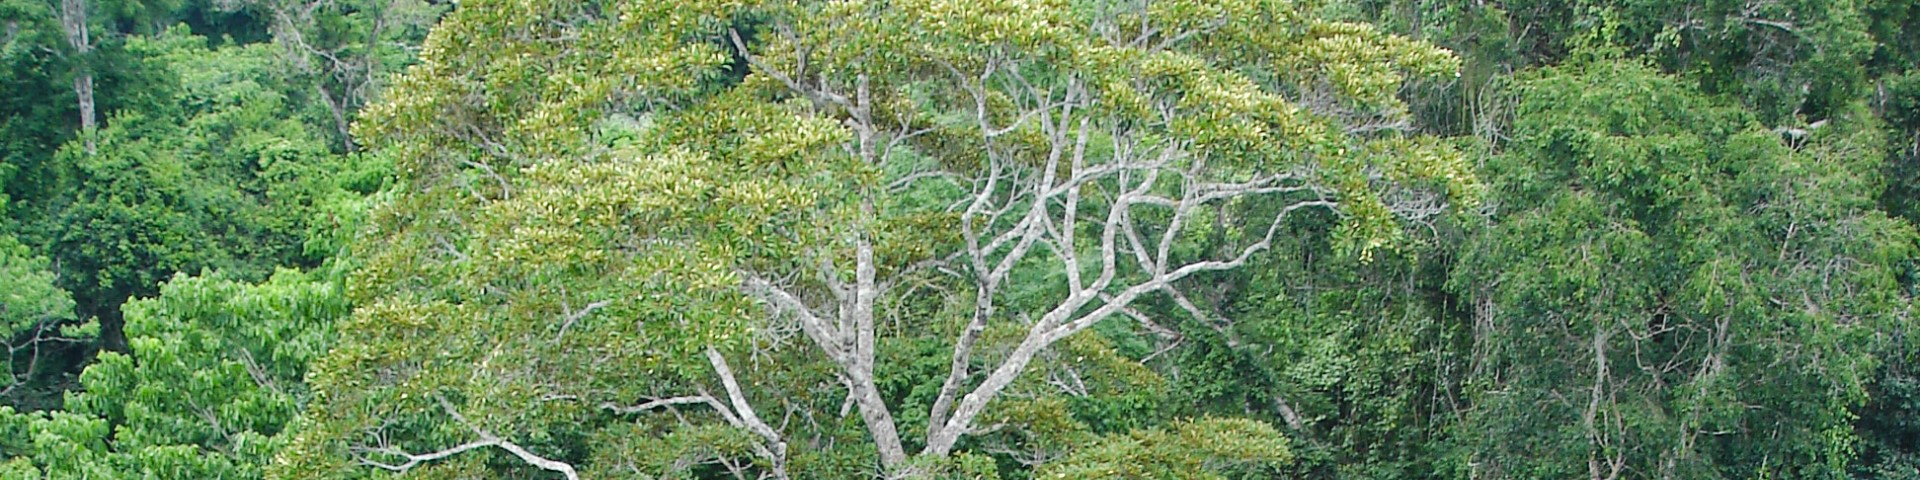 Vegetation im Amazonaswald